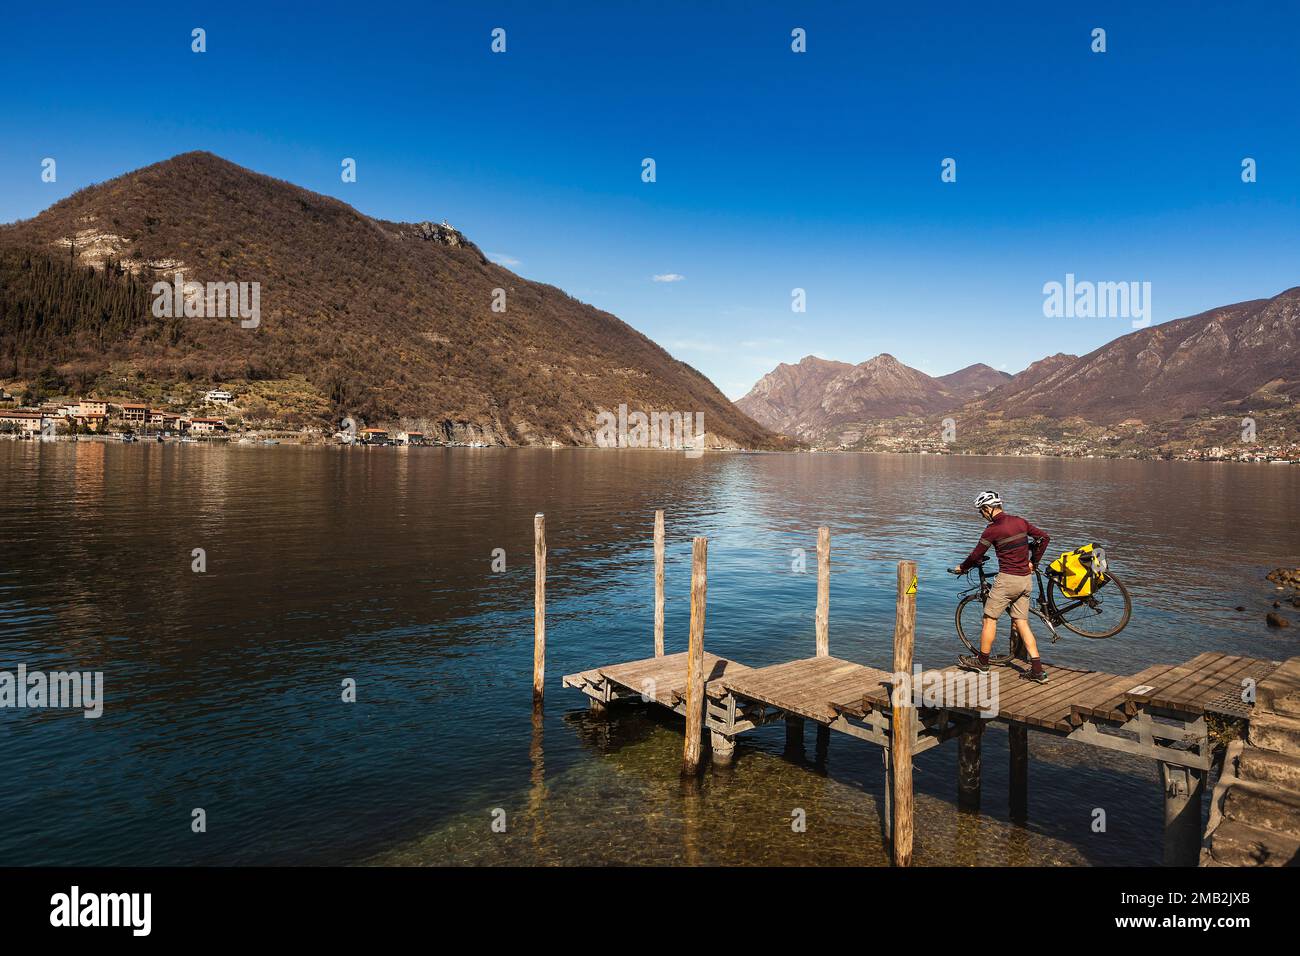 Italy, lombardia, bergamo area - Lago d'Iseo, Sulzano village Stock Photo